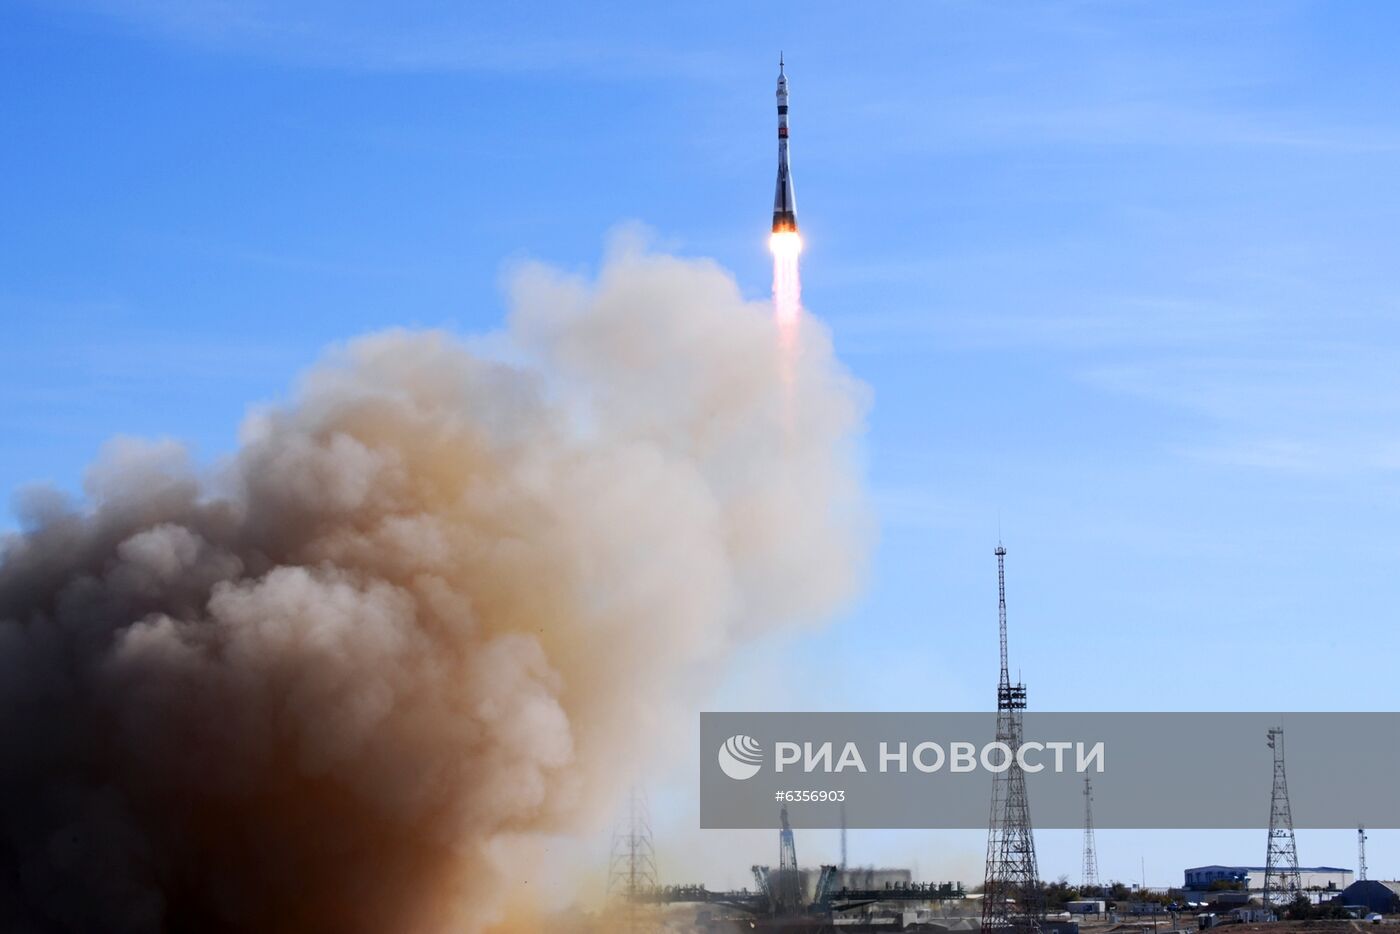 Запуск РН "Союз-2-1а" с кораблем "Союз МС-17" с космодрома Байконур 